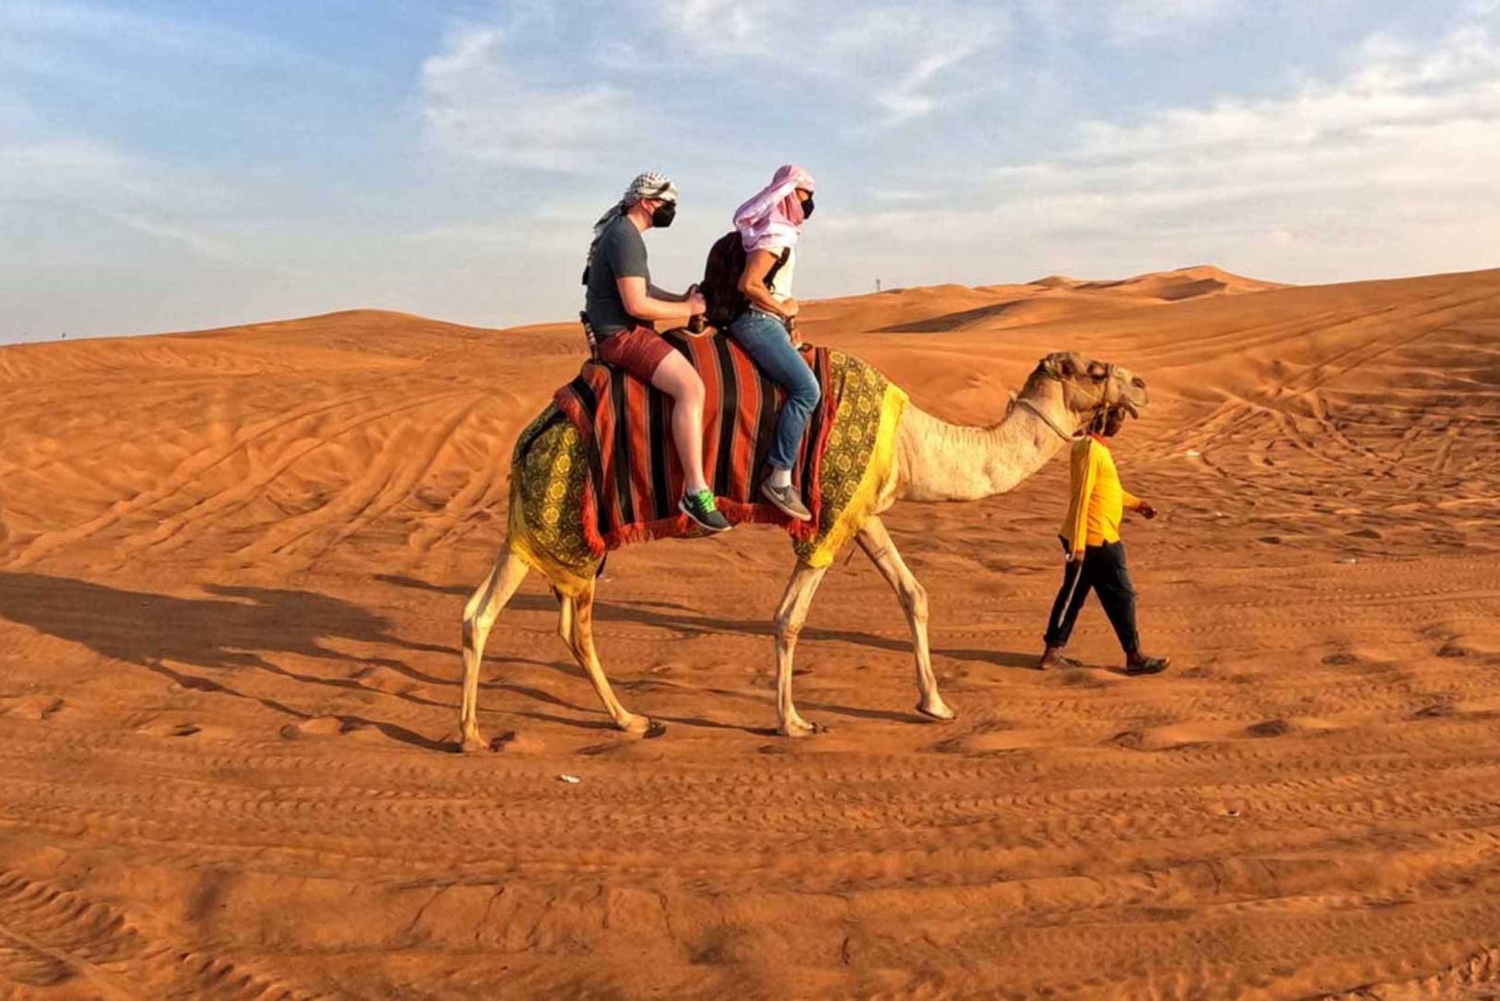 Dubai: Desert Camel Ride with Live Shows & BBQ Buffet Dinner